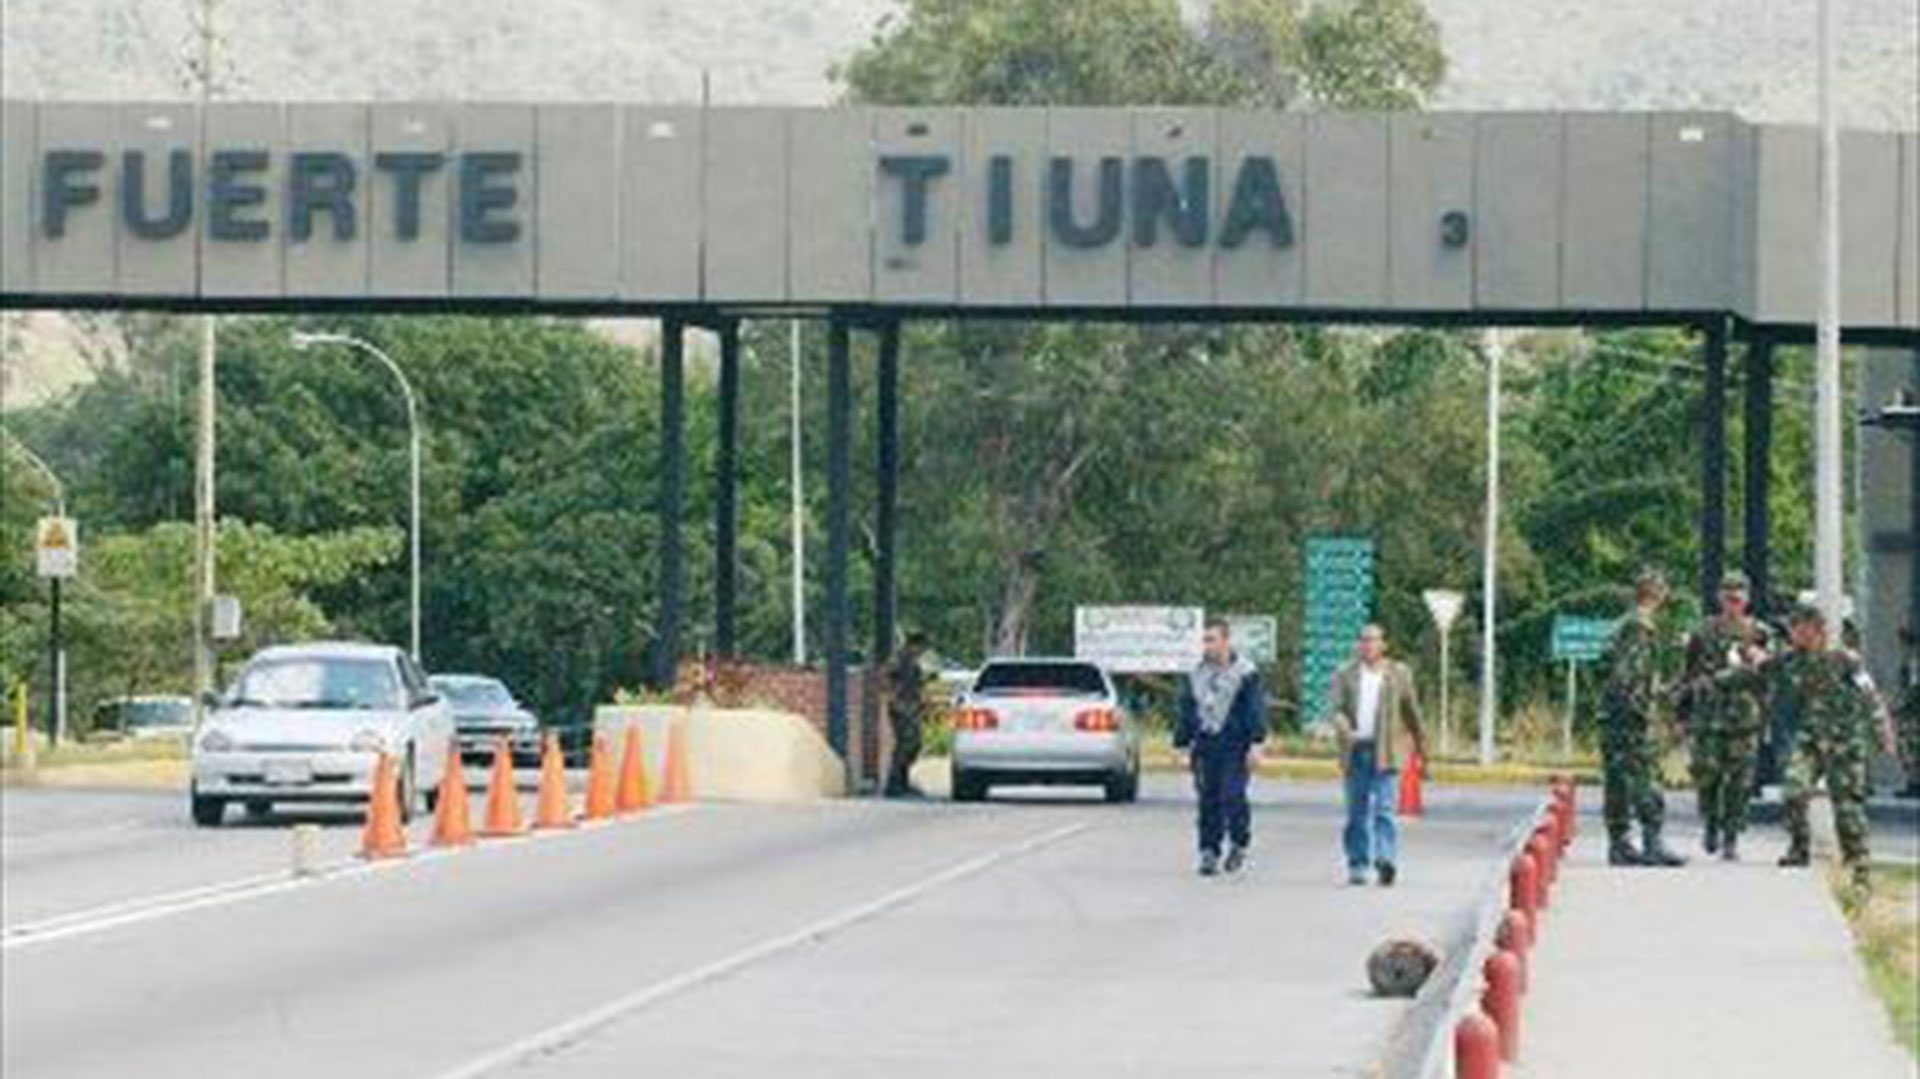 Toque de queda en la FFAA venezolana: Detendrán a quien camine por el Fuerte Tiuna después de las 9 de la noche